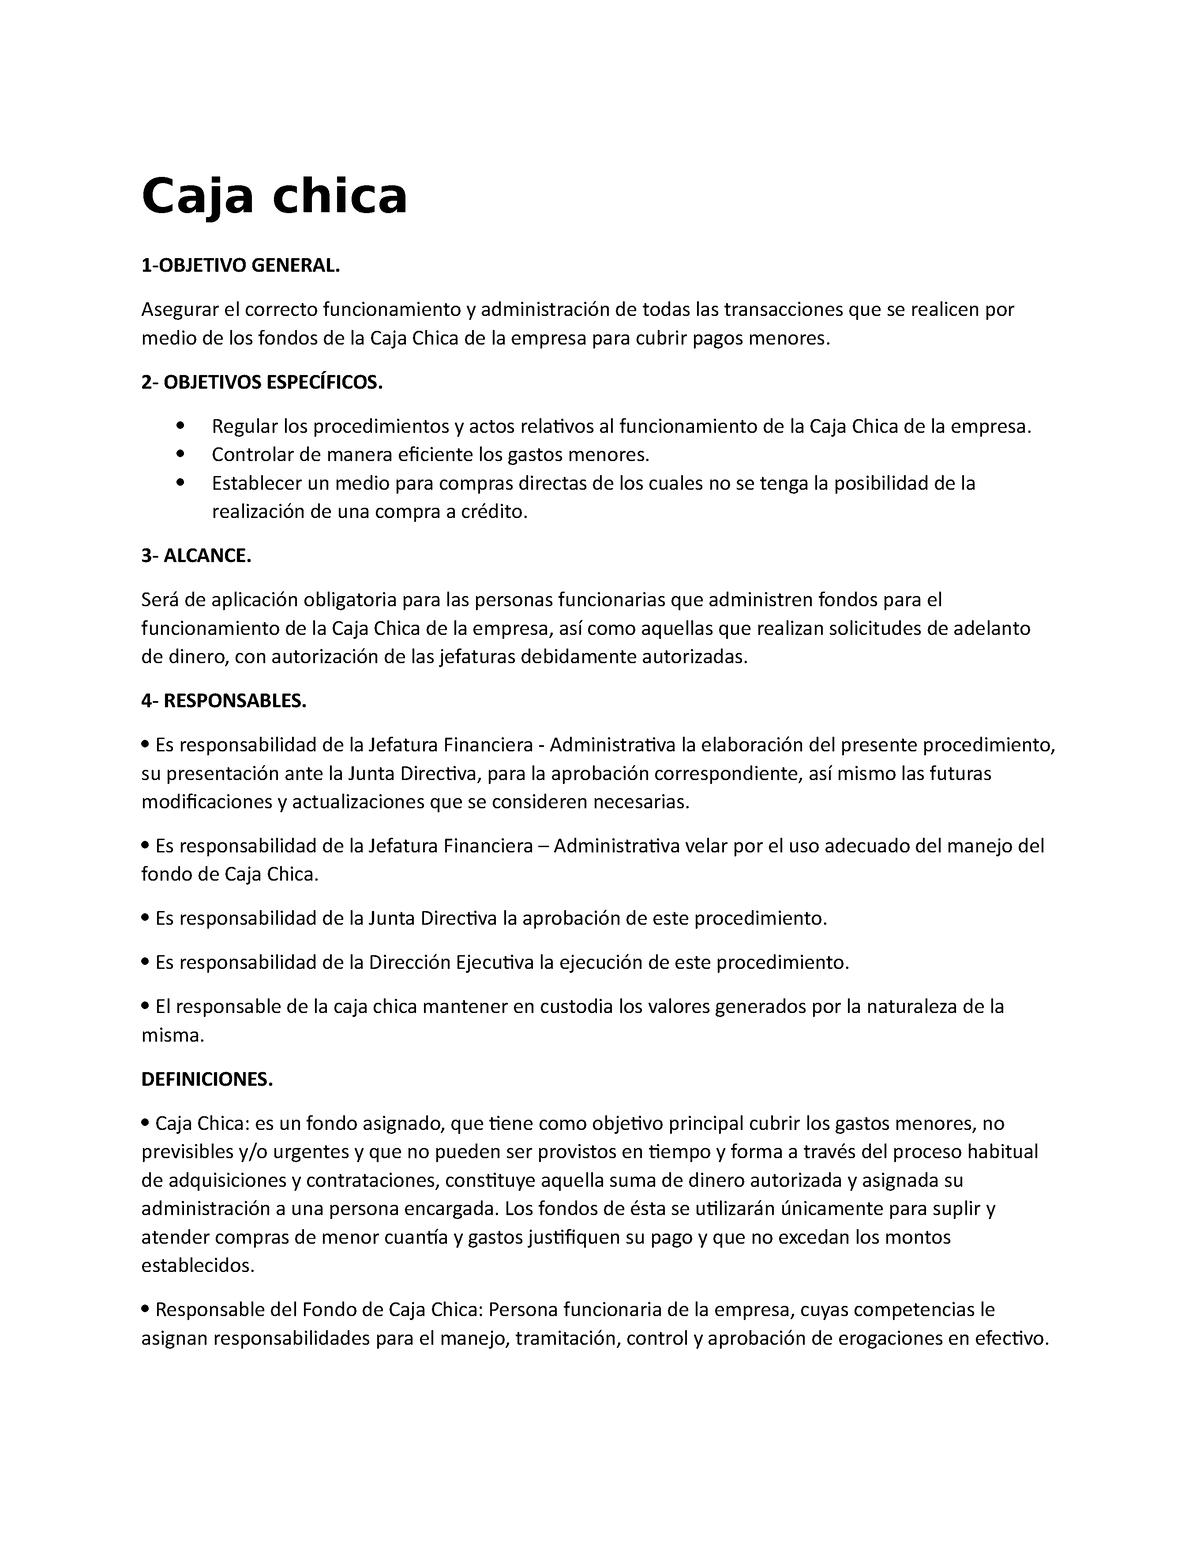 Politicas Y Procedimientos De Caja Chica Caja Chica 1 Objetivo General Asegurar El Correcto 8343